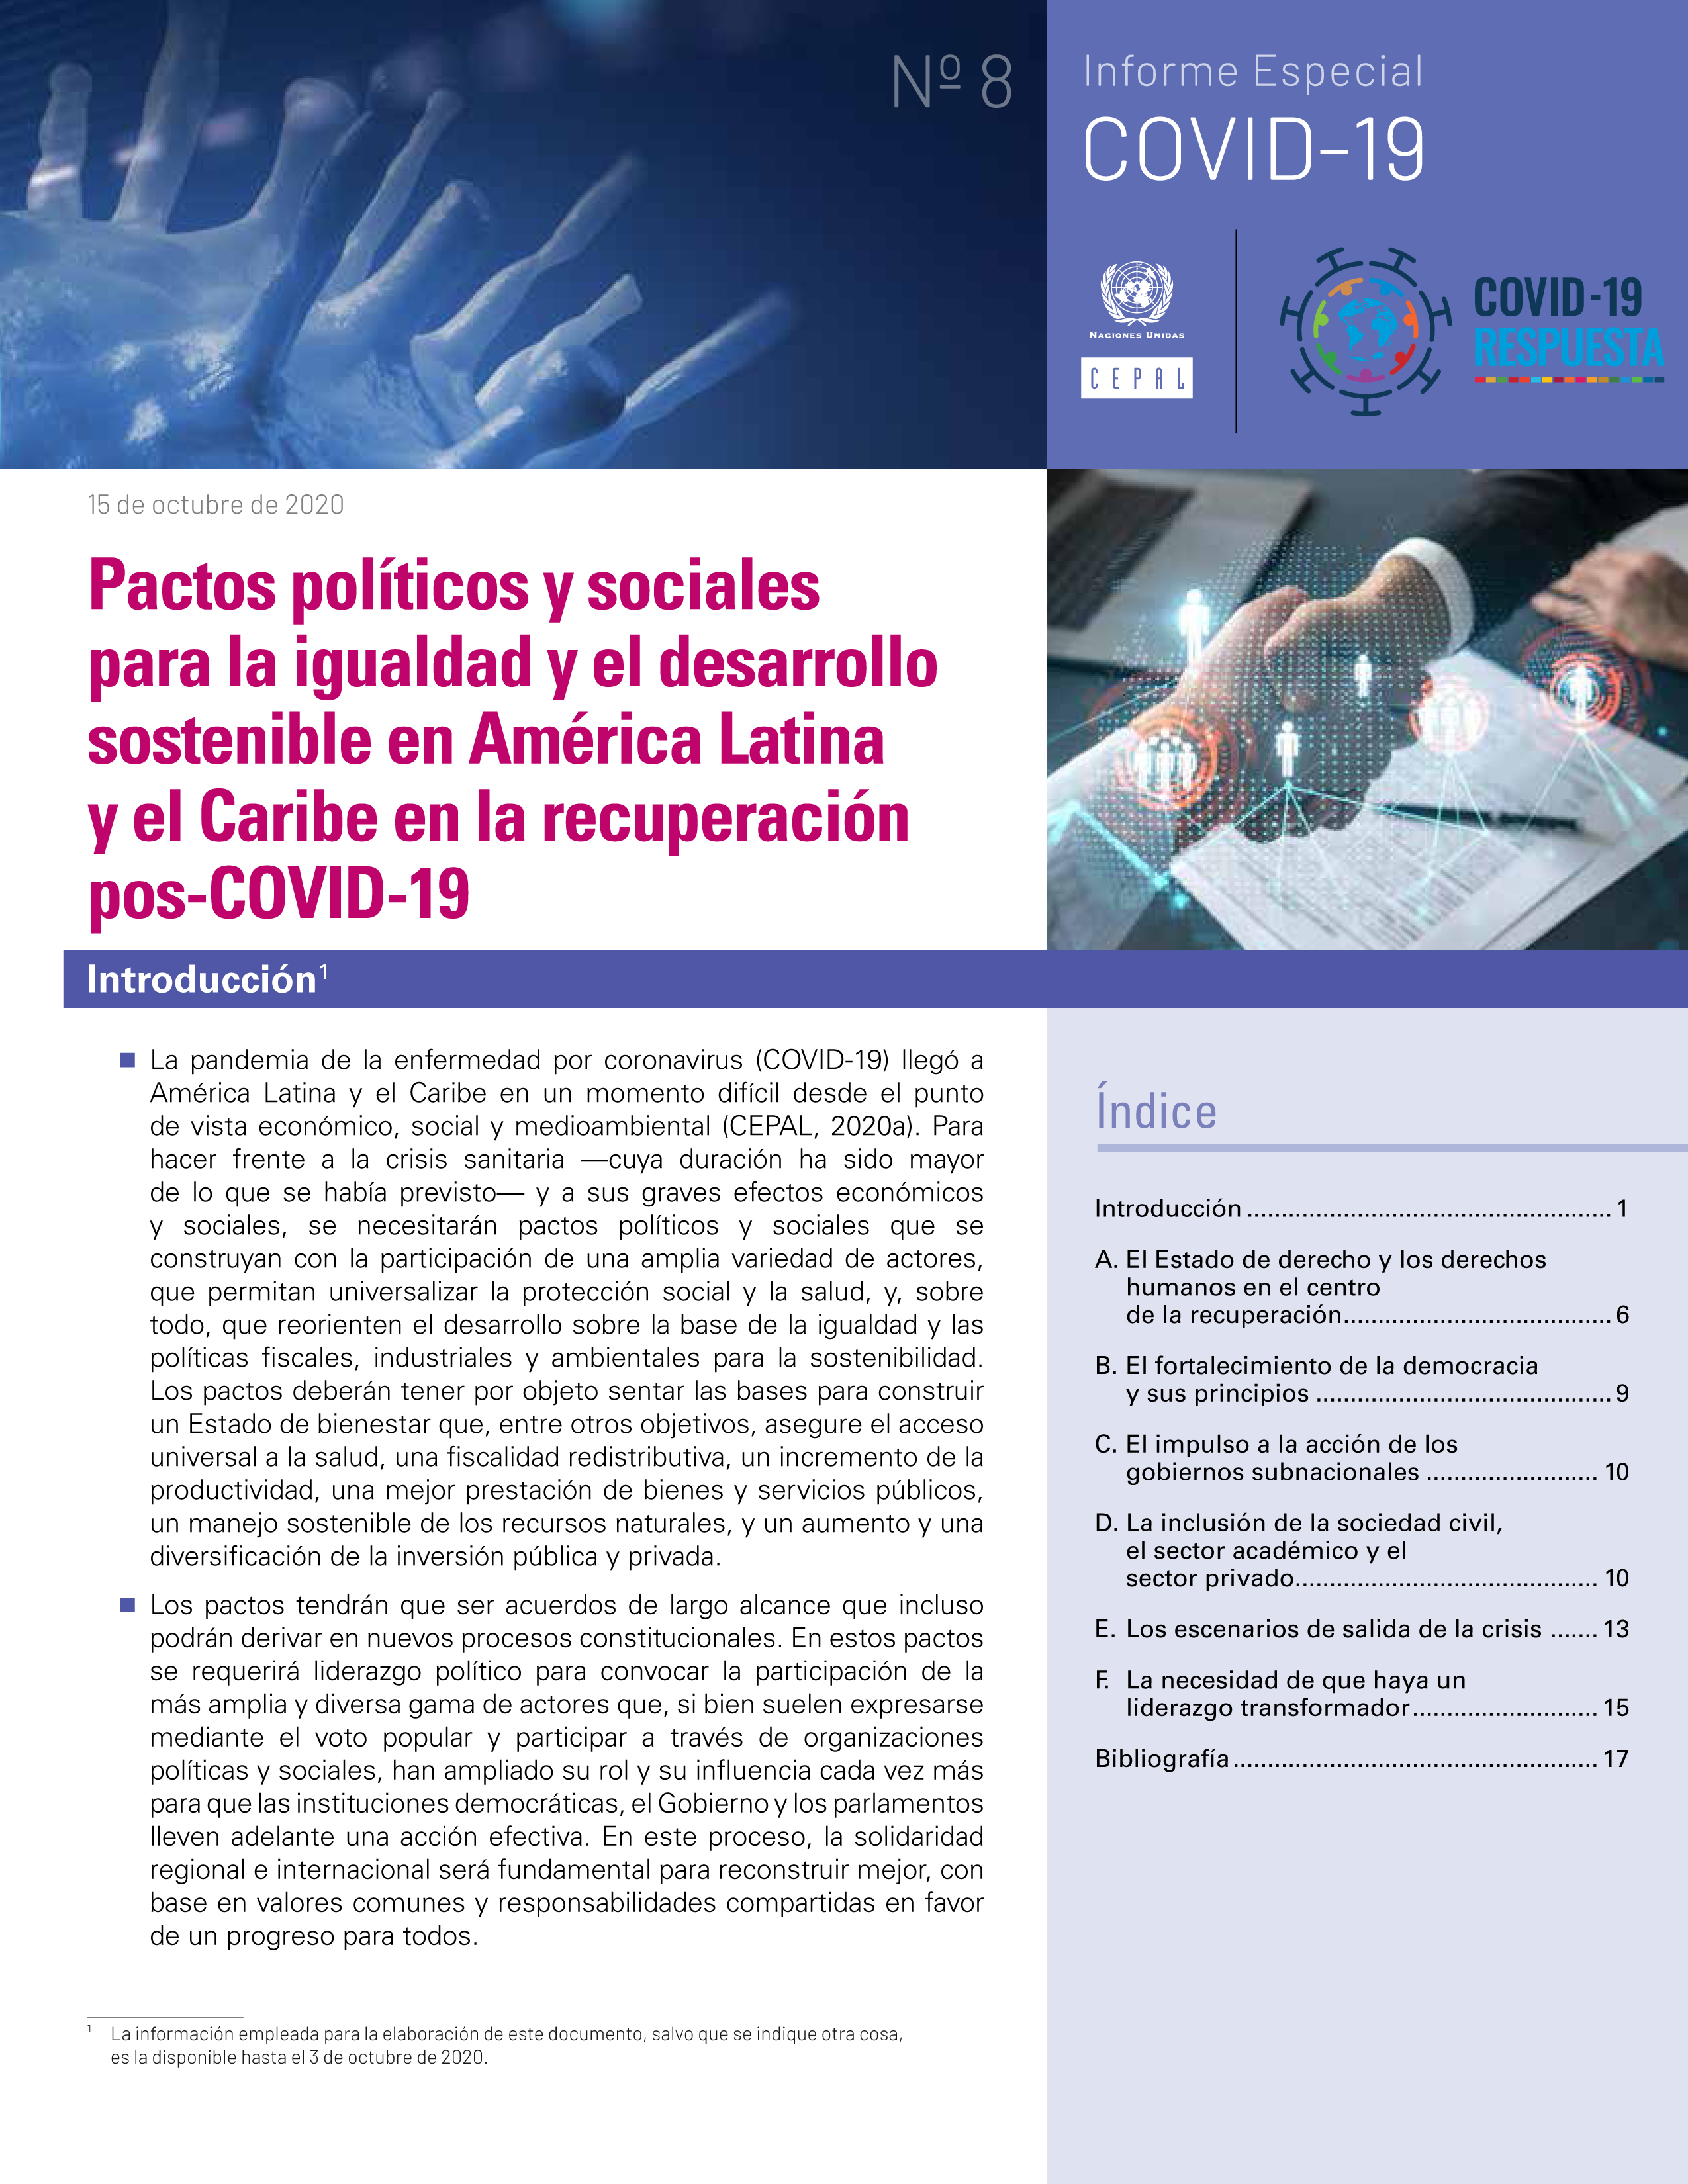 image of Pactos políticos y sociales para la igualdad y el desarrollo sostenible en América Latina y el Caribe en la recuperación pos-COVID-19